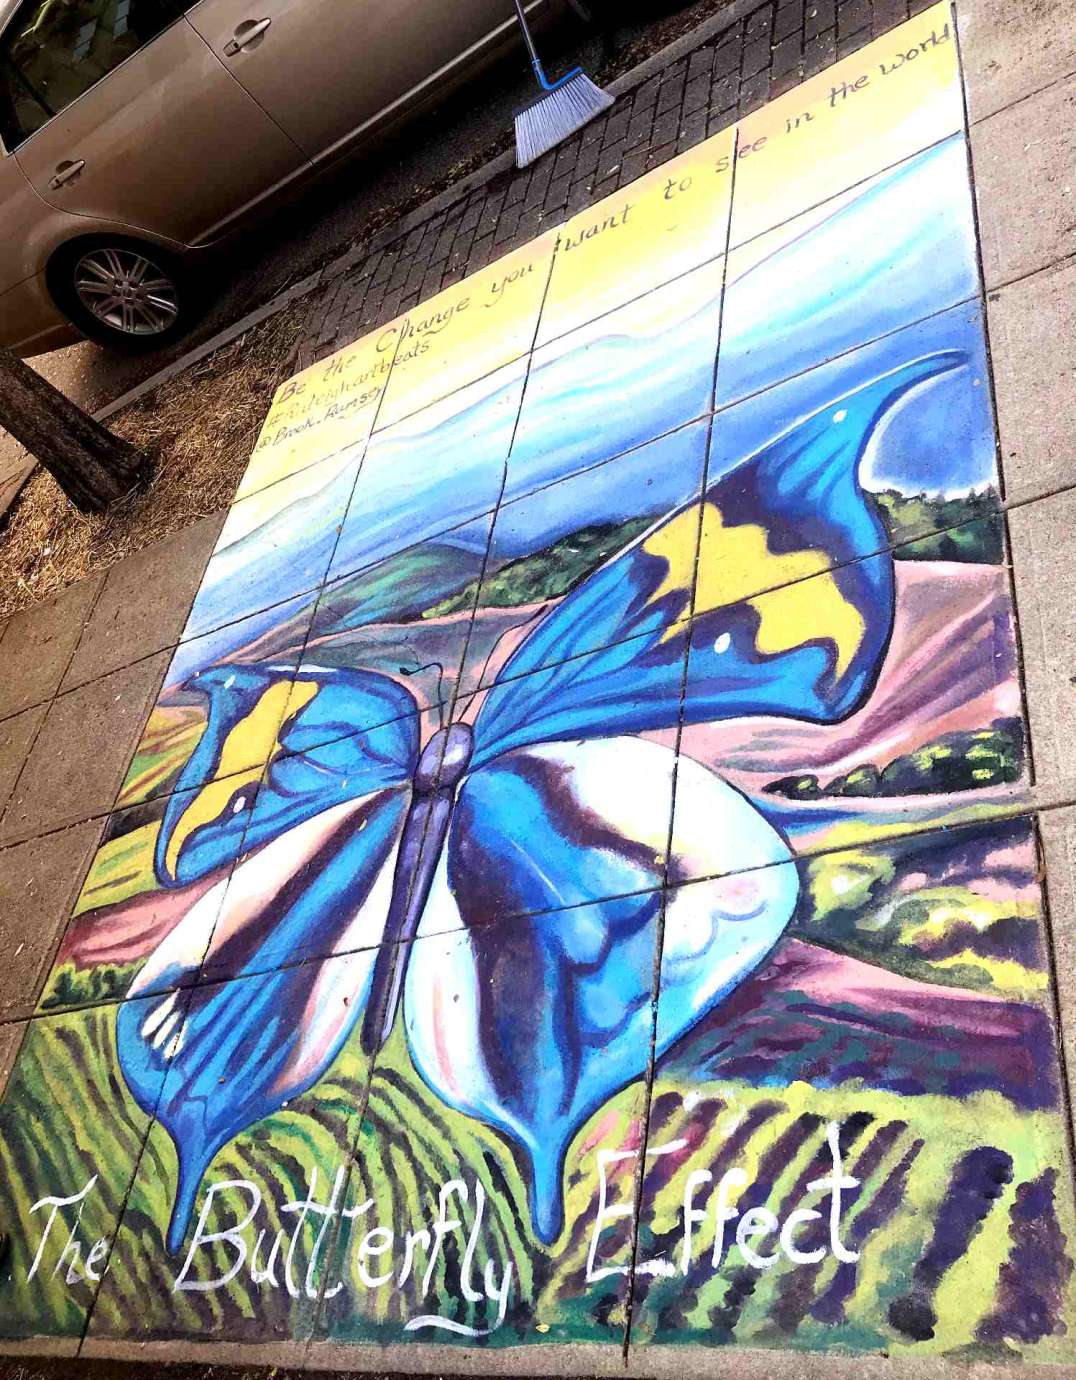 Sidewalk mural by artist Brook Ramsey